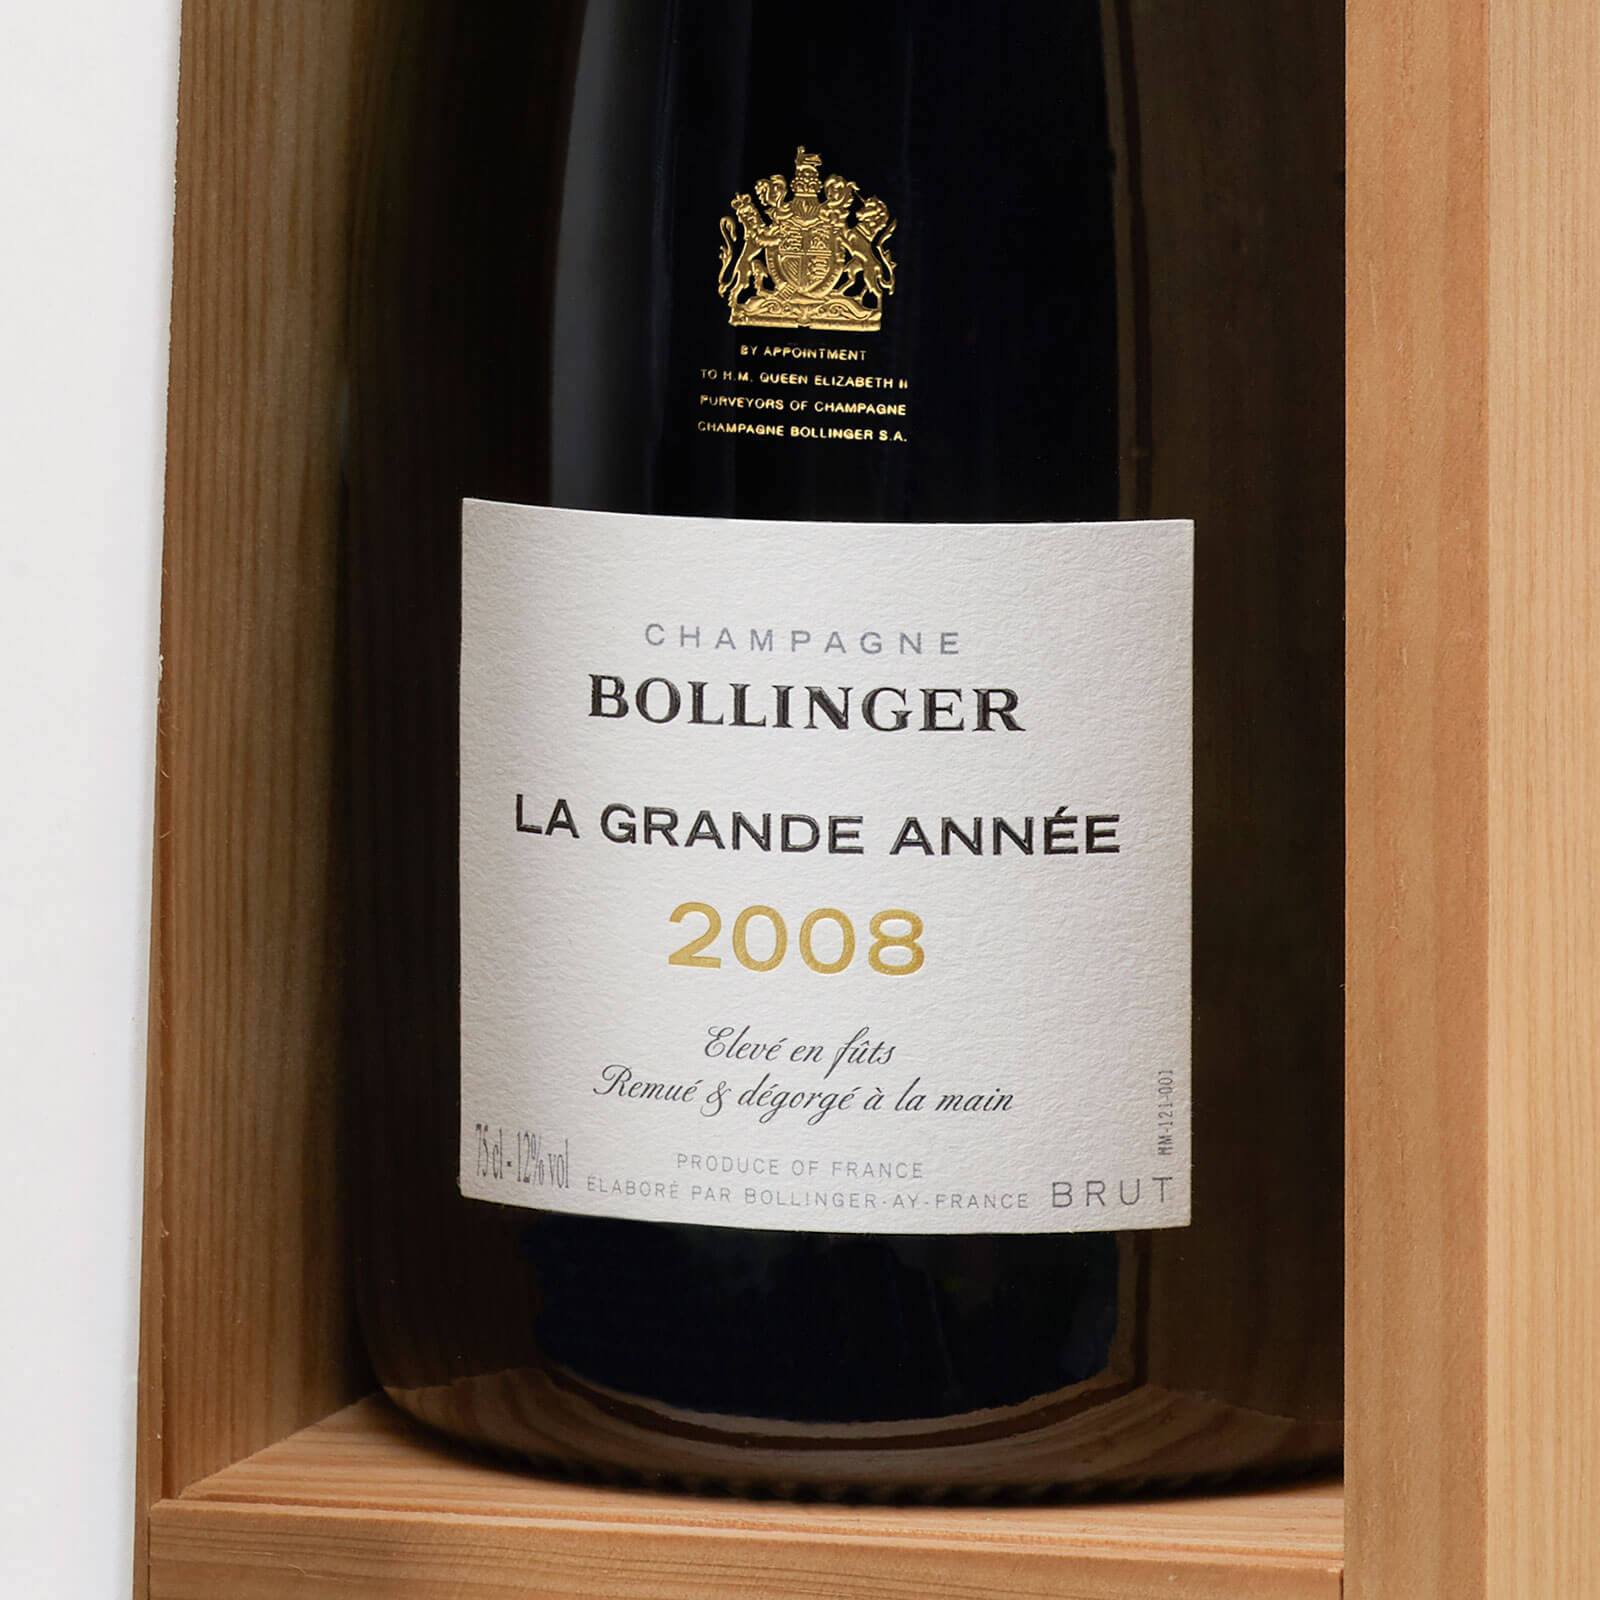 Bollinger 2008 La Grande Année Champagne: Still Young, But Already 